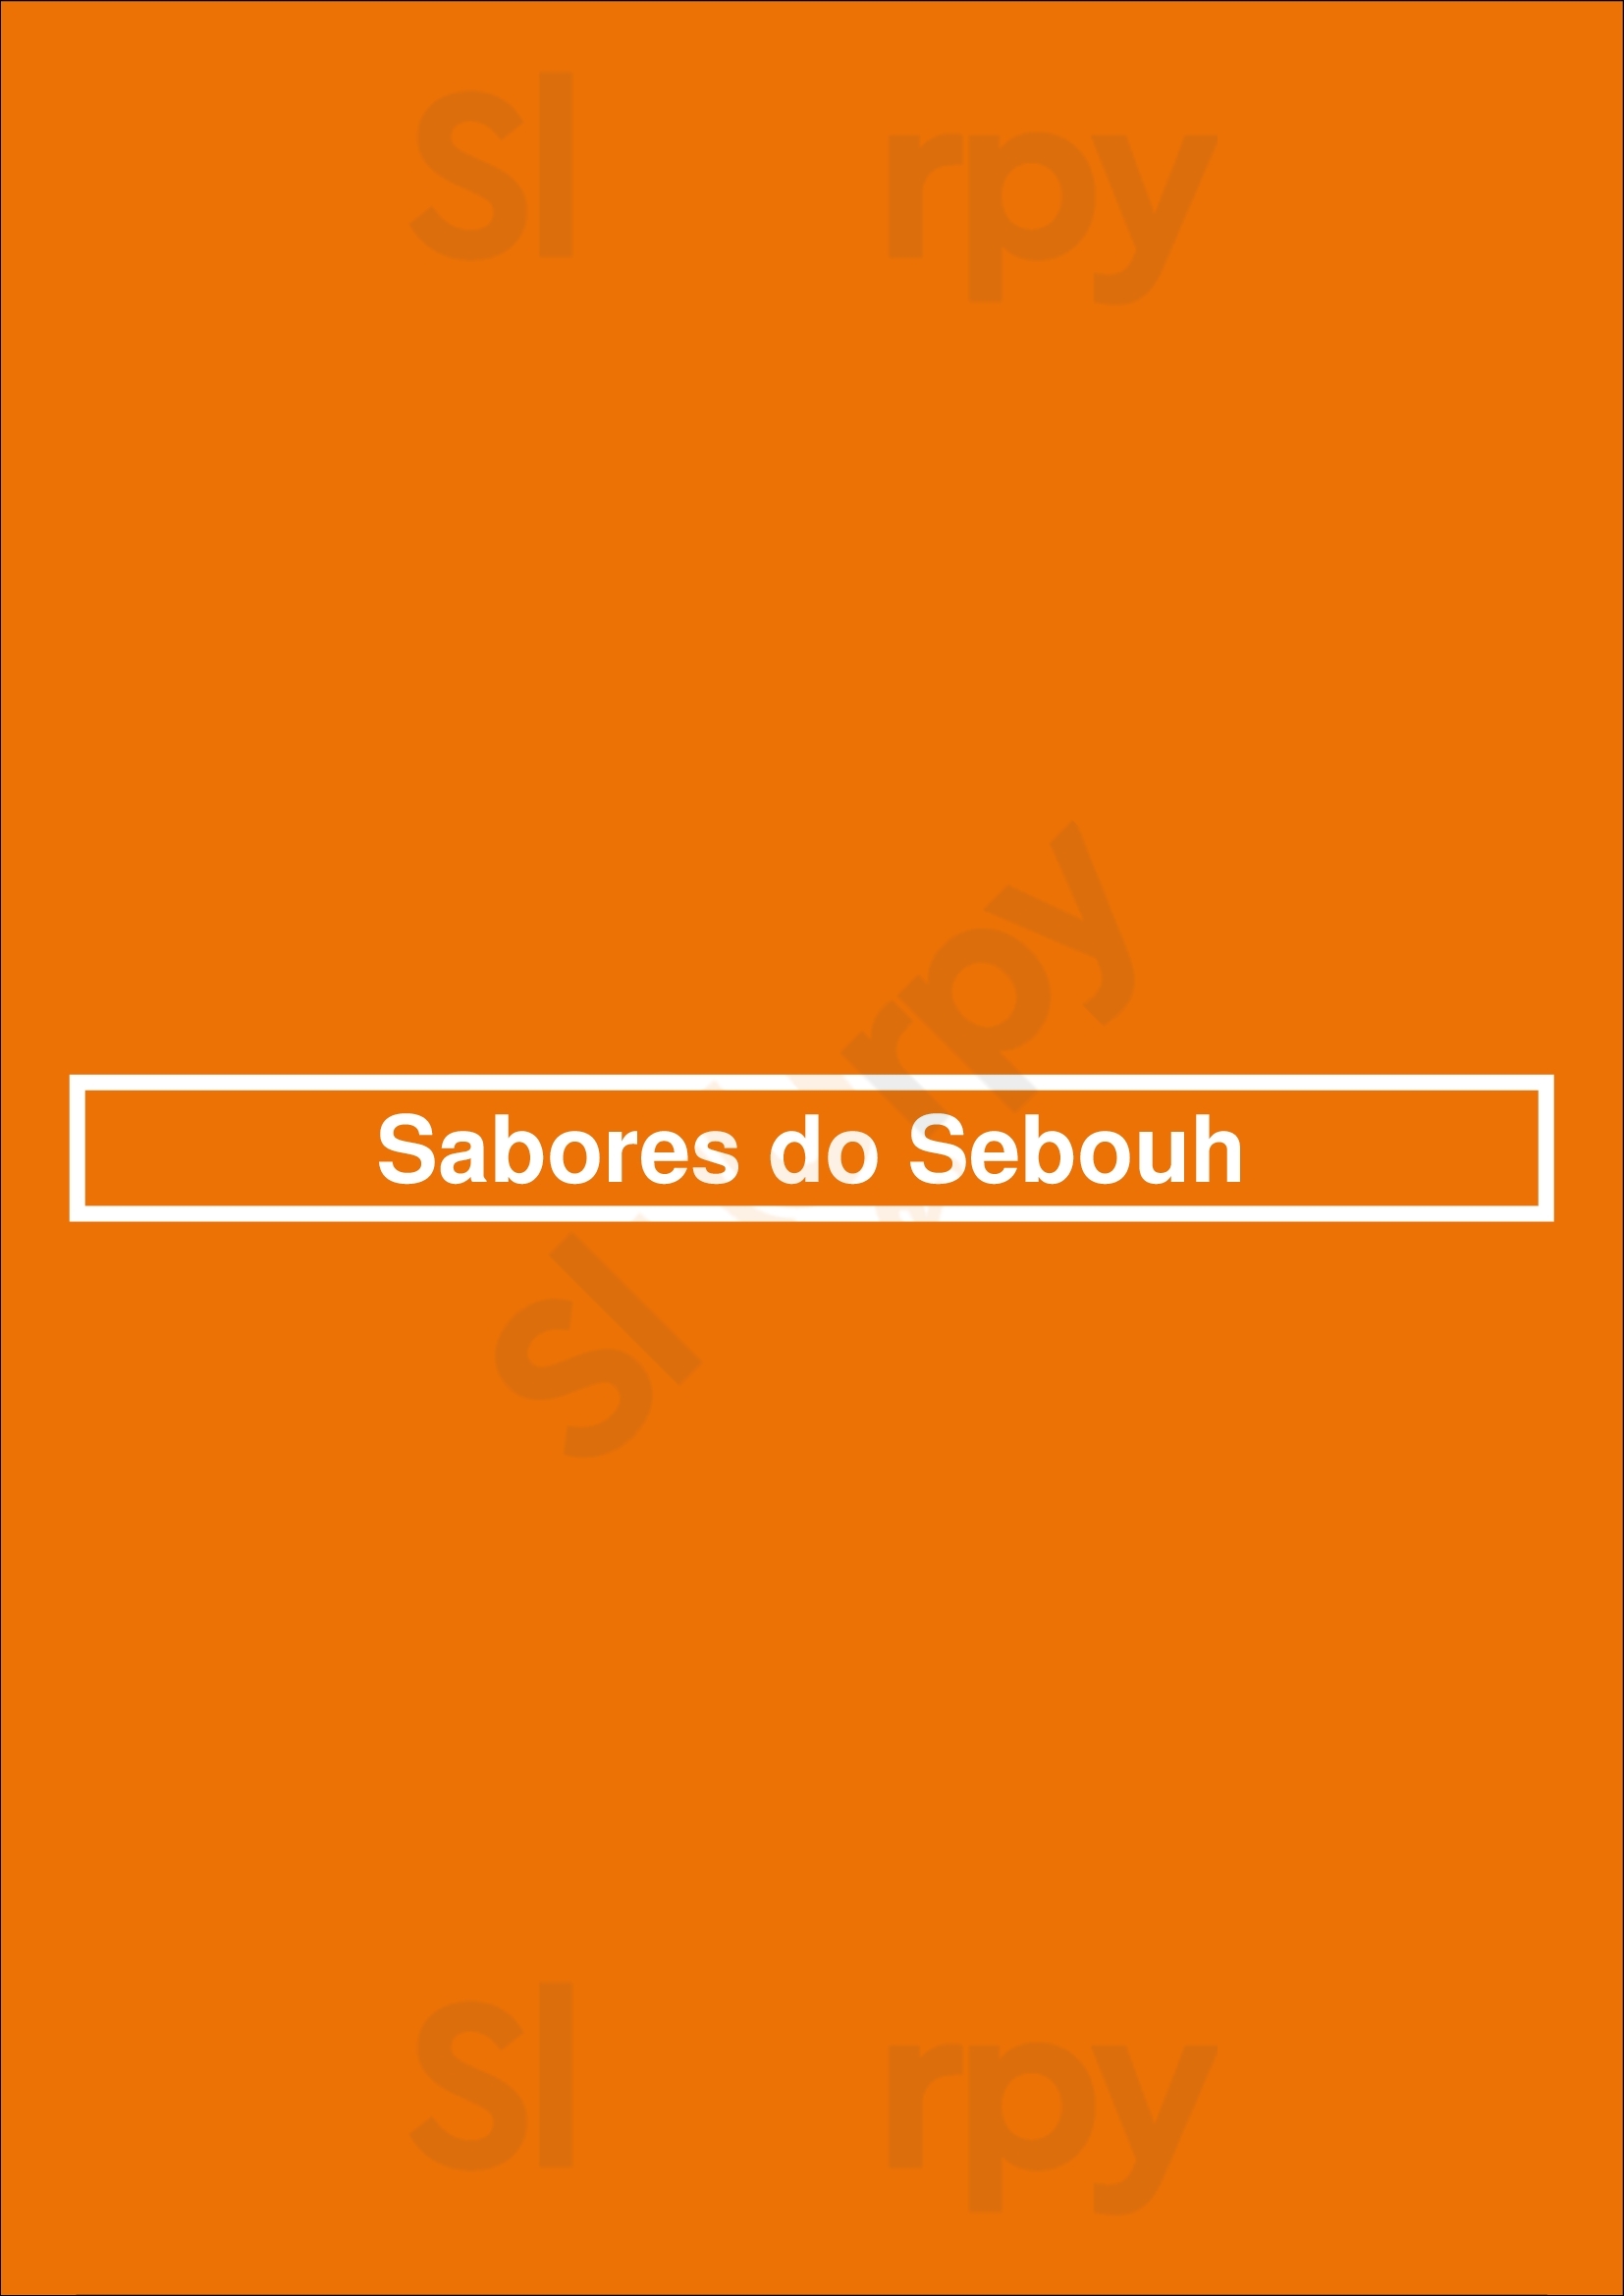 Sabores Do Sebouh Porto Menu - 1